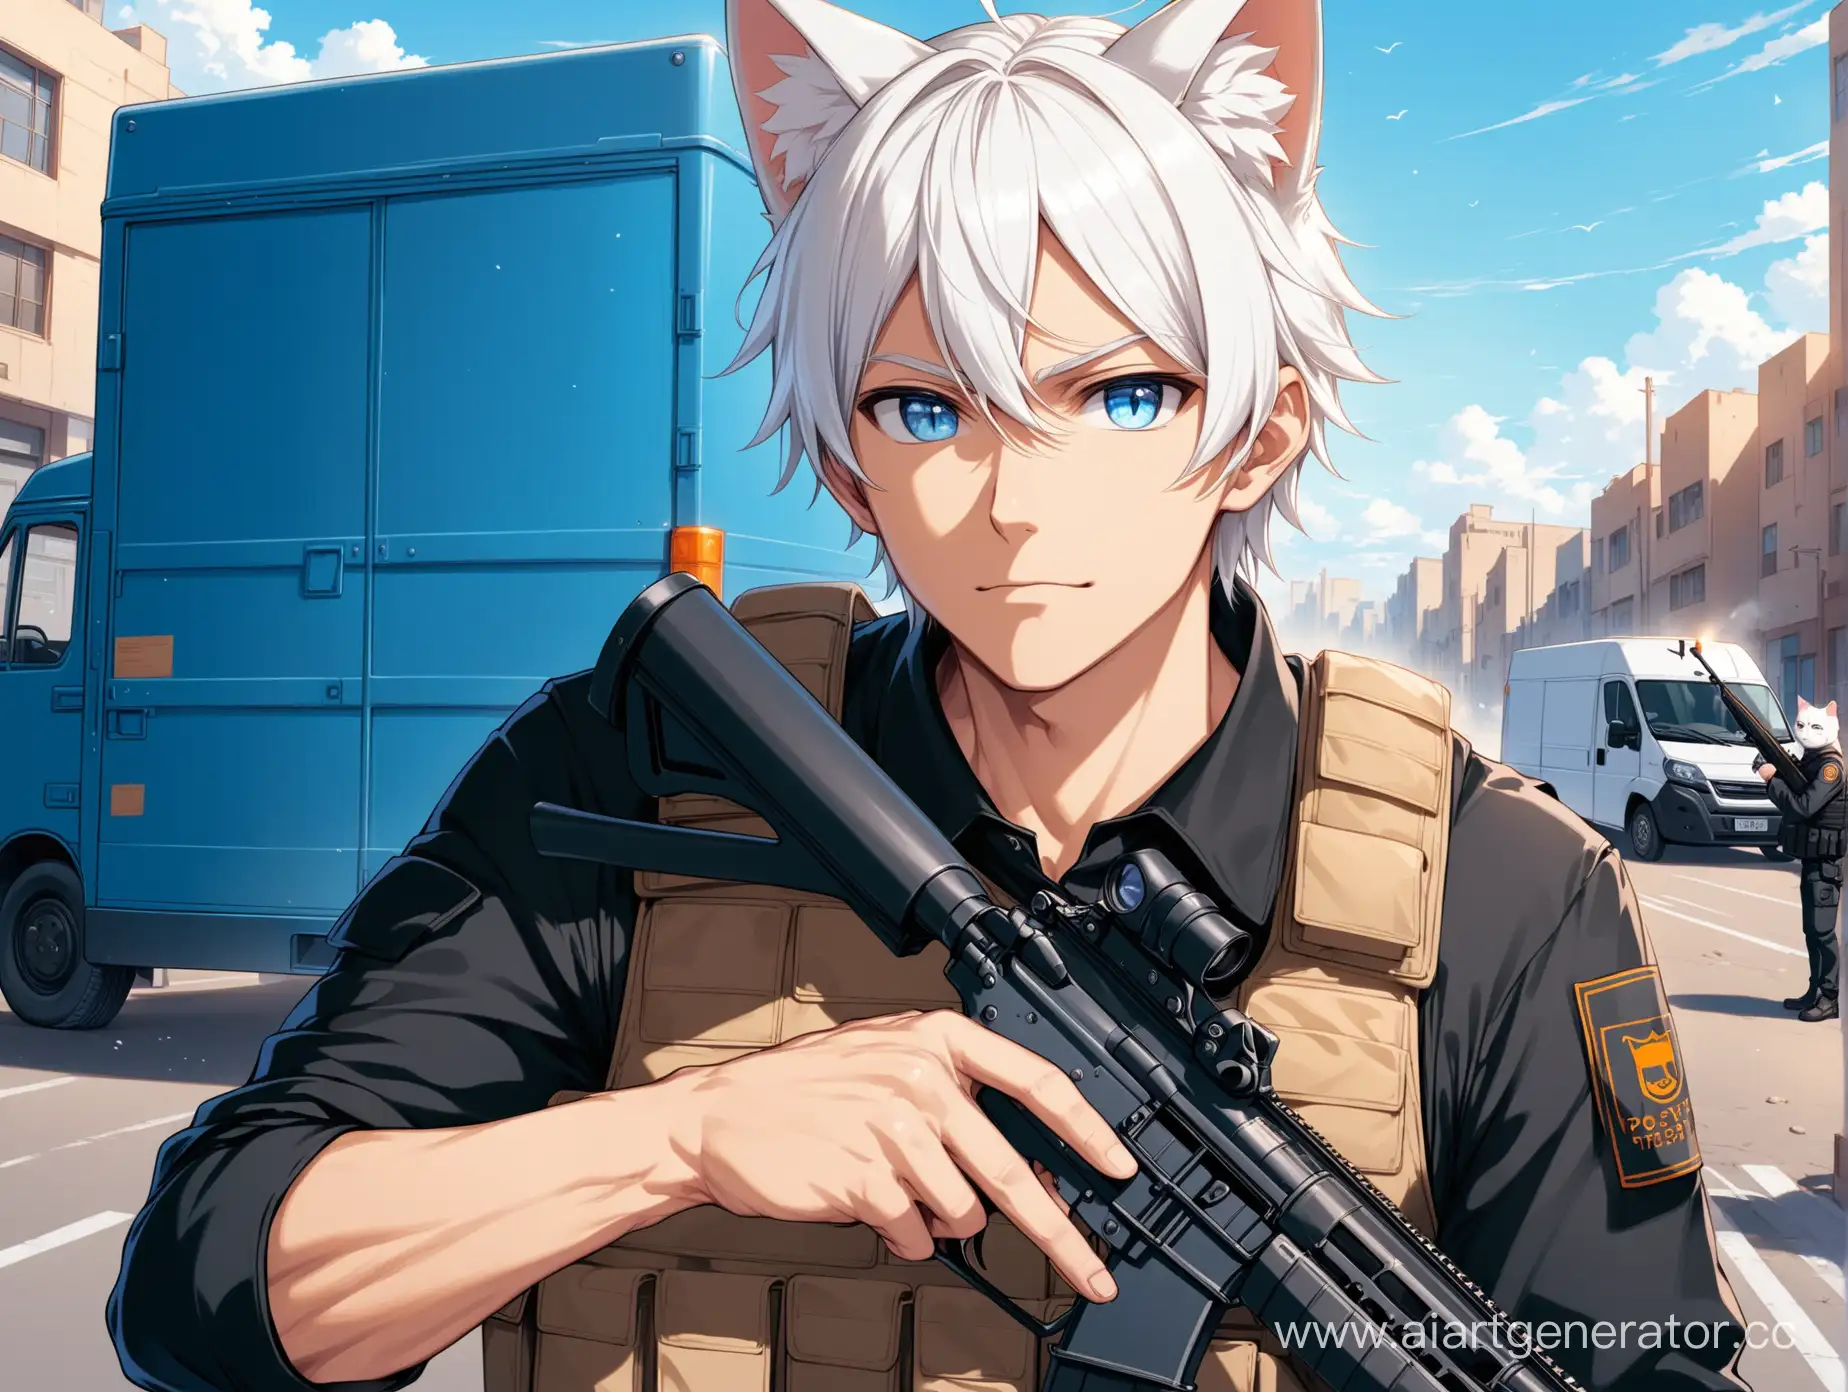 Мужчина с белыми волосами, с кошачьими ушами, с винтовкой в рук и в бронежилете, в чёрной кофте, с голубыми глазами, а на фоне машина почтальона